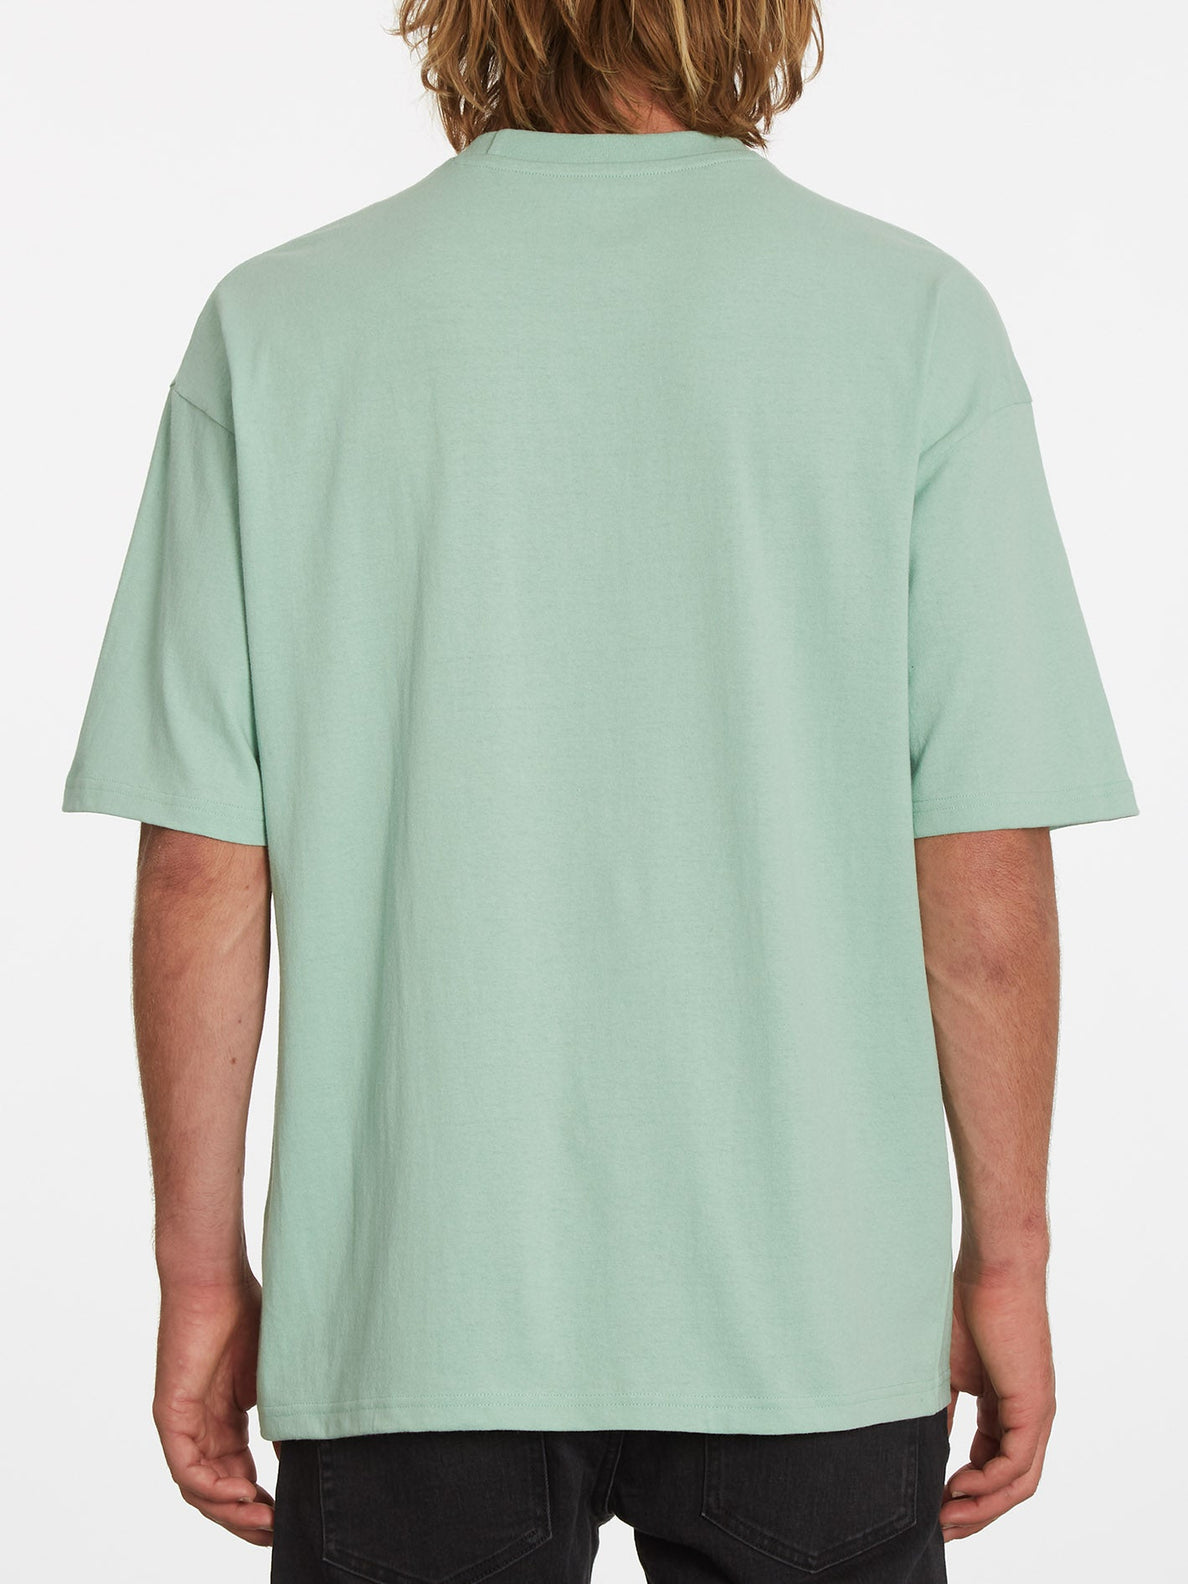 Rippeuro T-shirt - LICHEN GREEN (A4332206_LCG) [B]